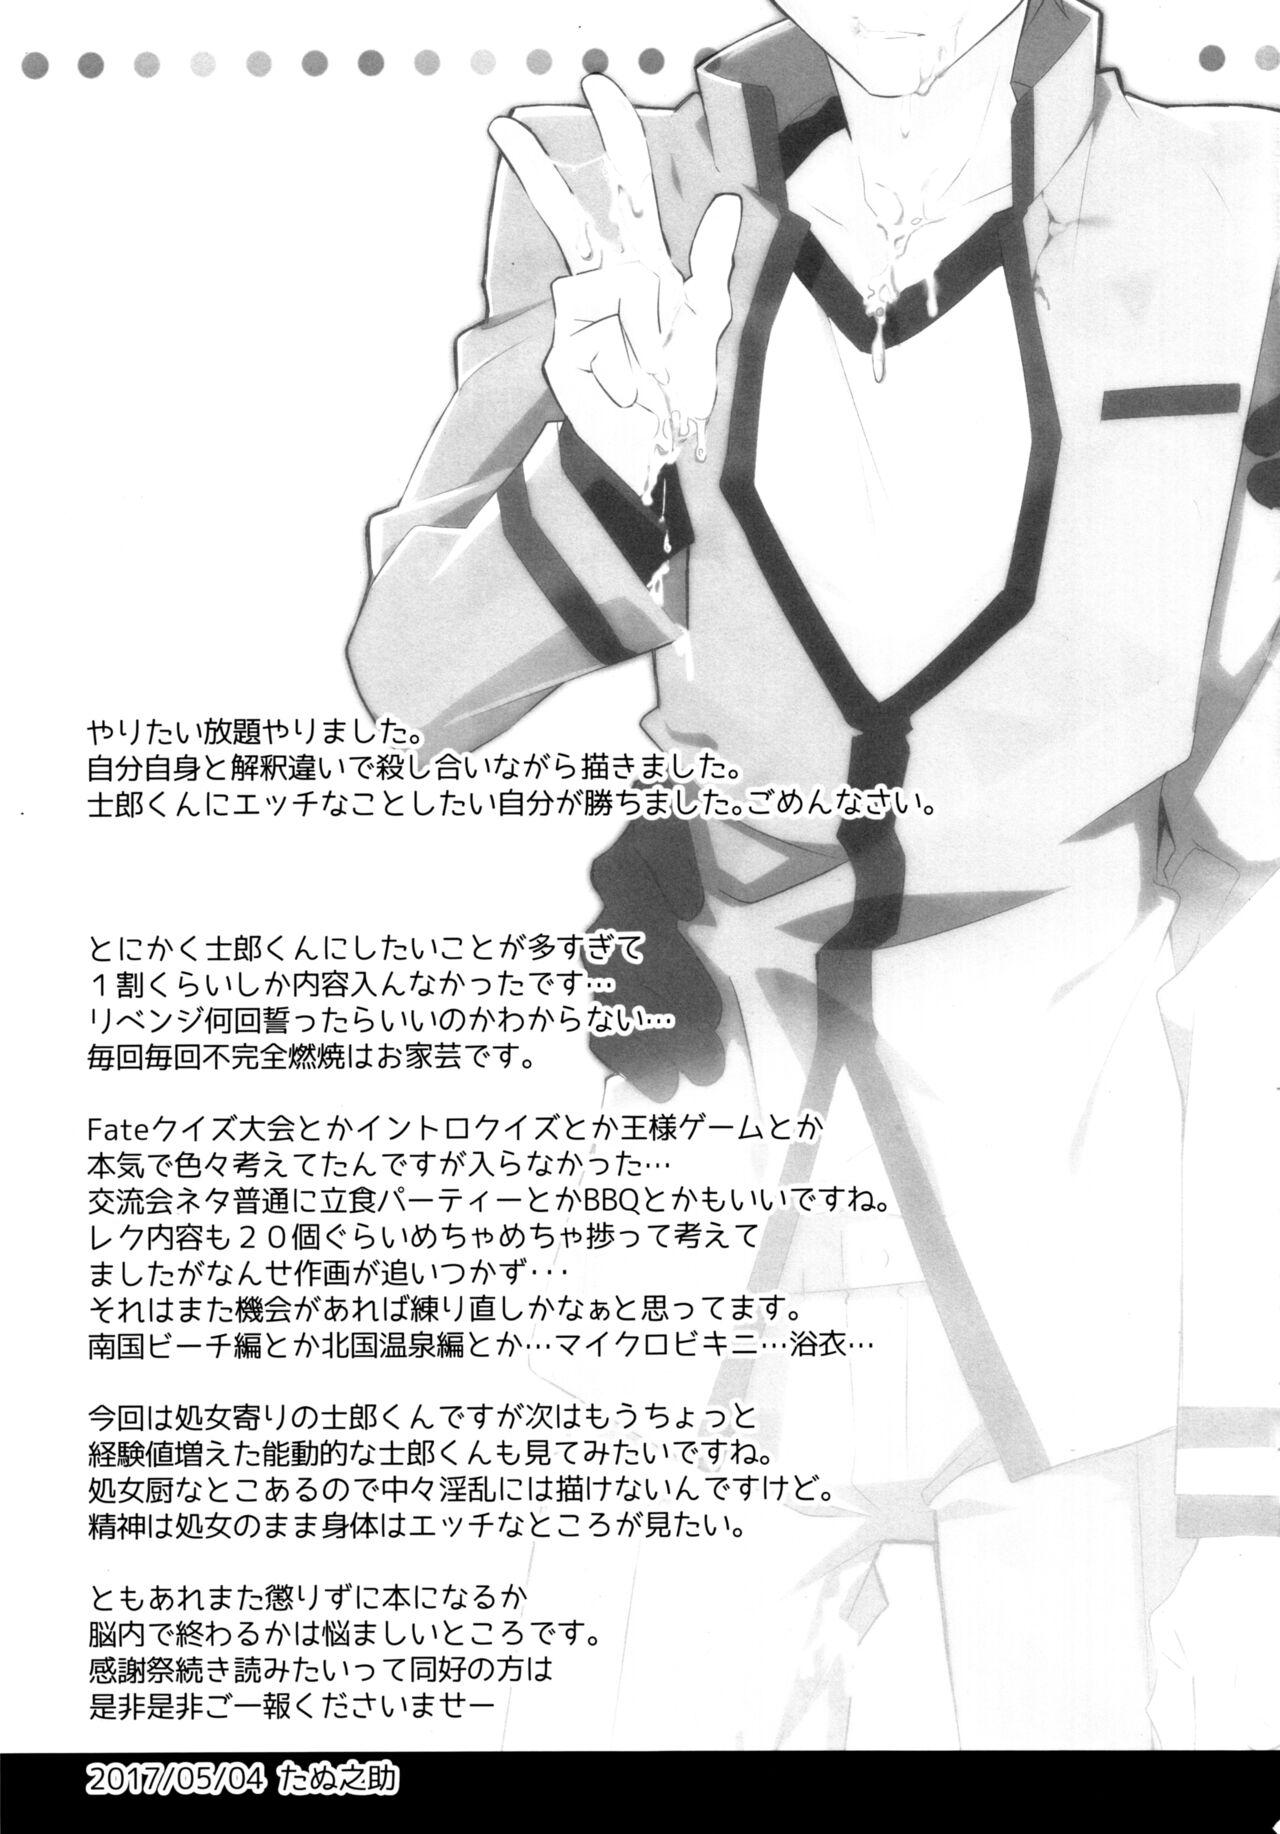 (SUPER26) [GLUTAMIC:ACID (Tanunosuke)] 1st Emiya Shirou-kun Muramasa Unofficial Fan Kansha-sai (Fate/stay night) 40